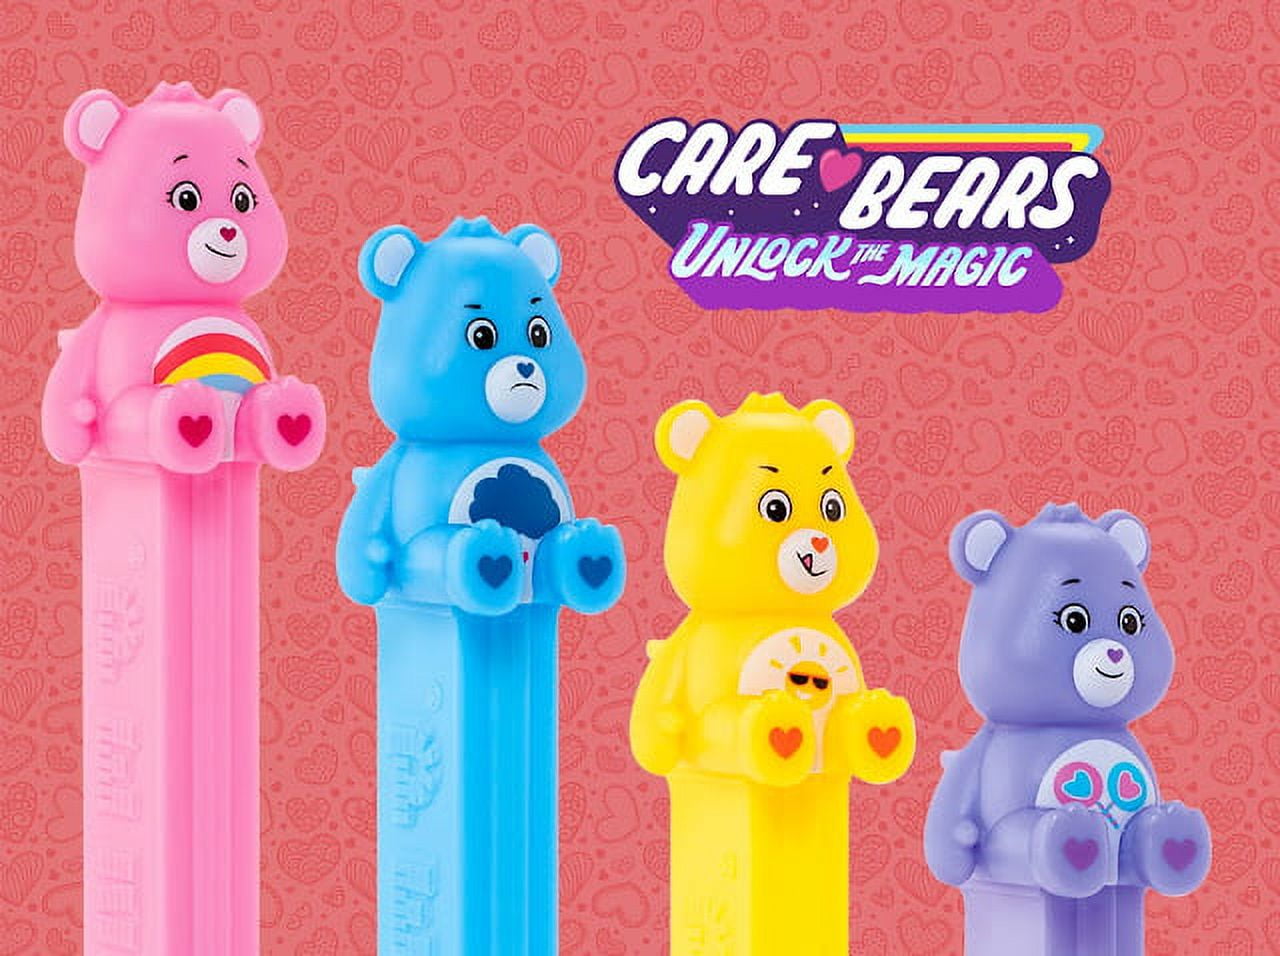 Share Bear PEZ Dispenser & Candy, Care Bears